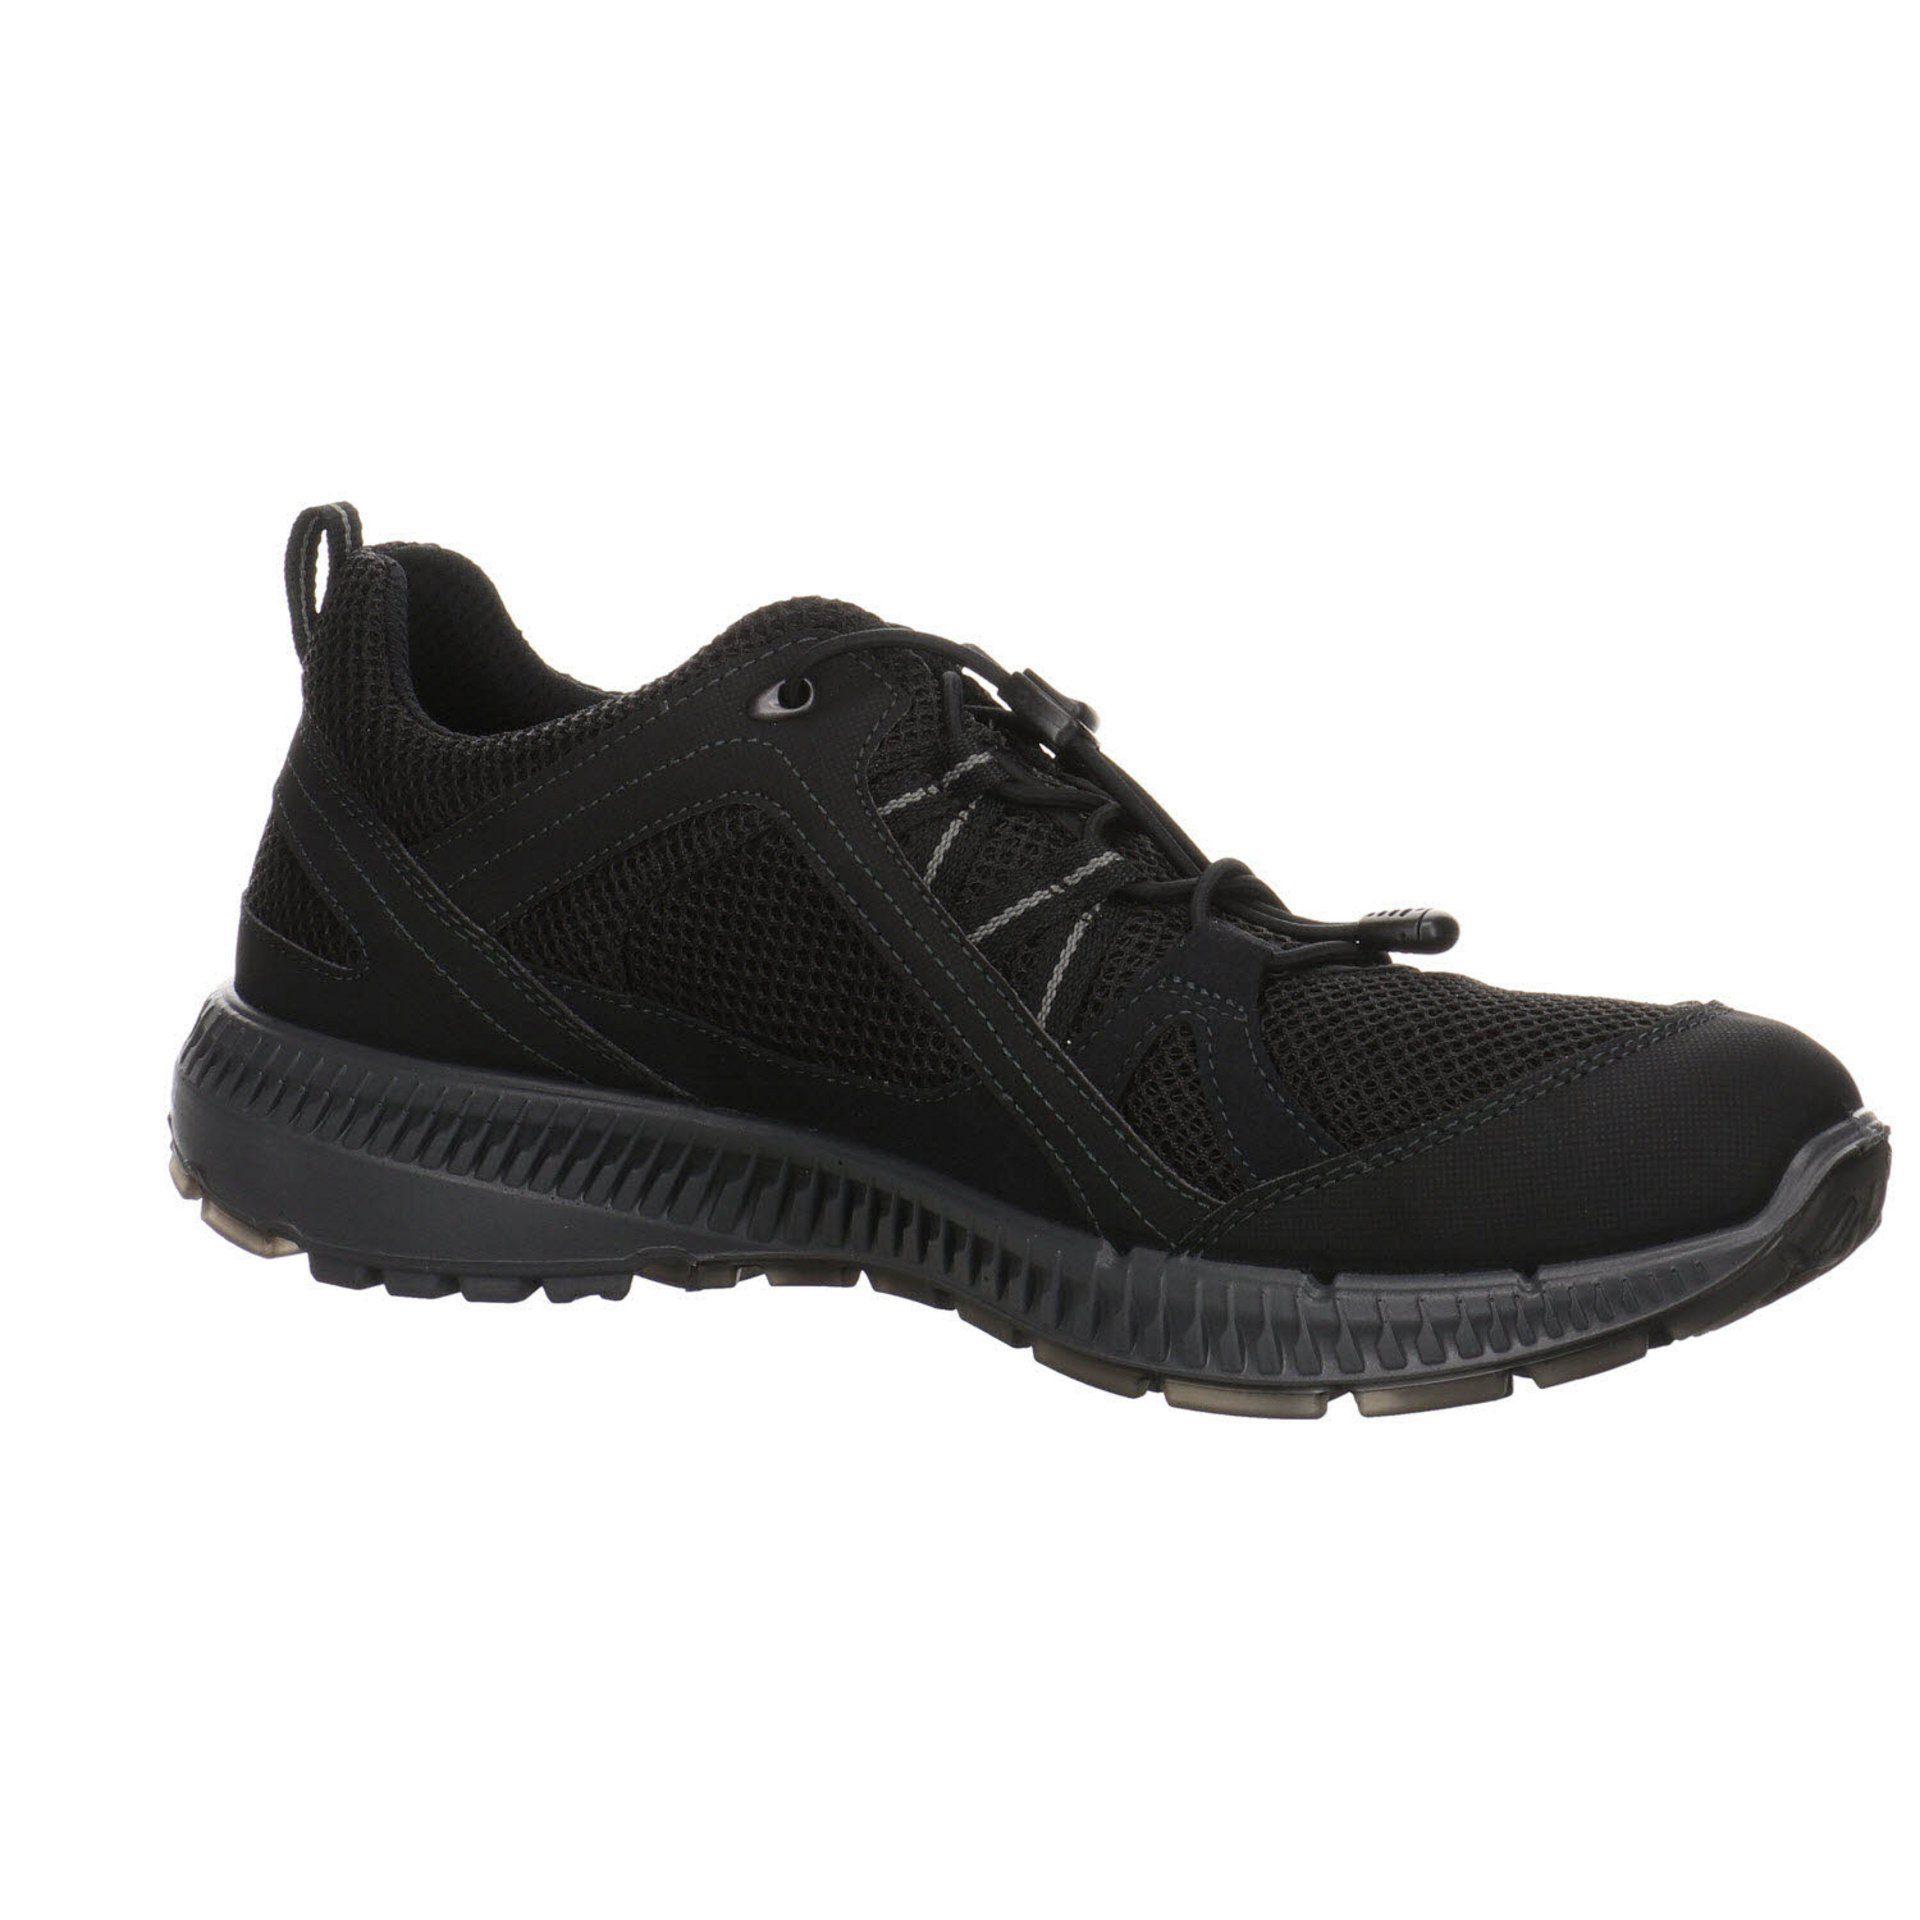 Ecco Outdoorschuh Synthetikkombination Outdoorschuh Outdoor schwarz Schuhe Herren GTX dunkel Terracruise